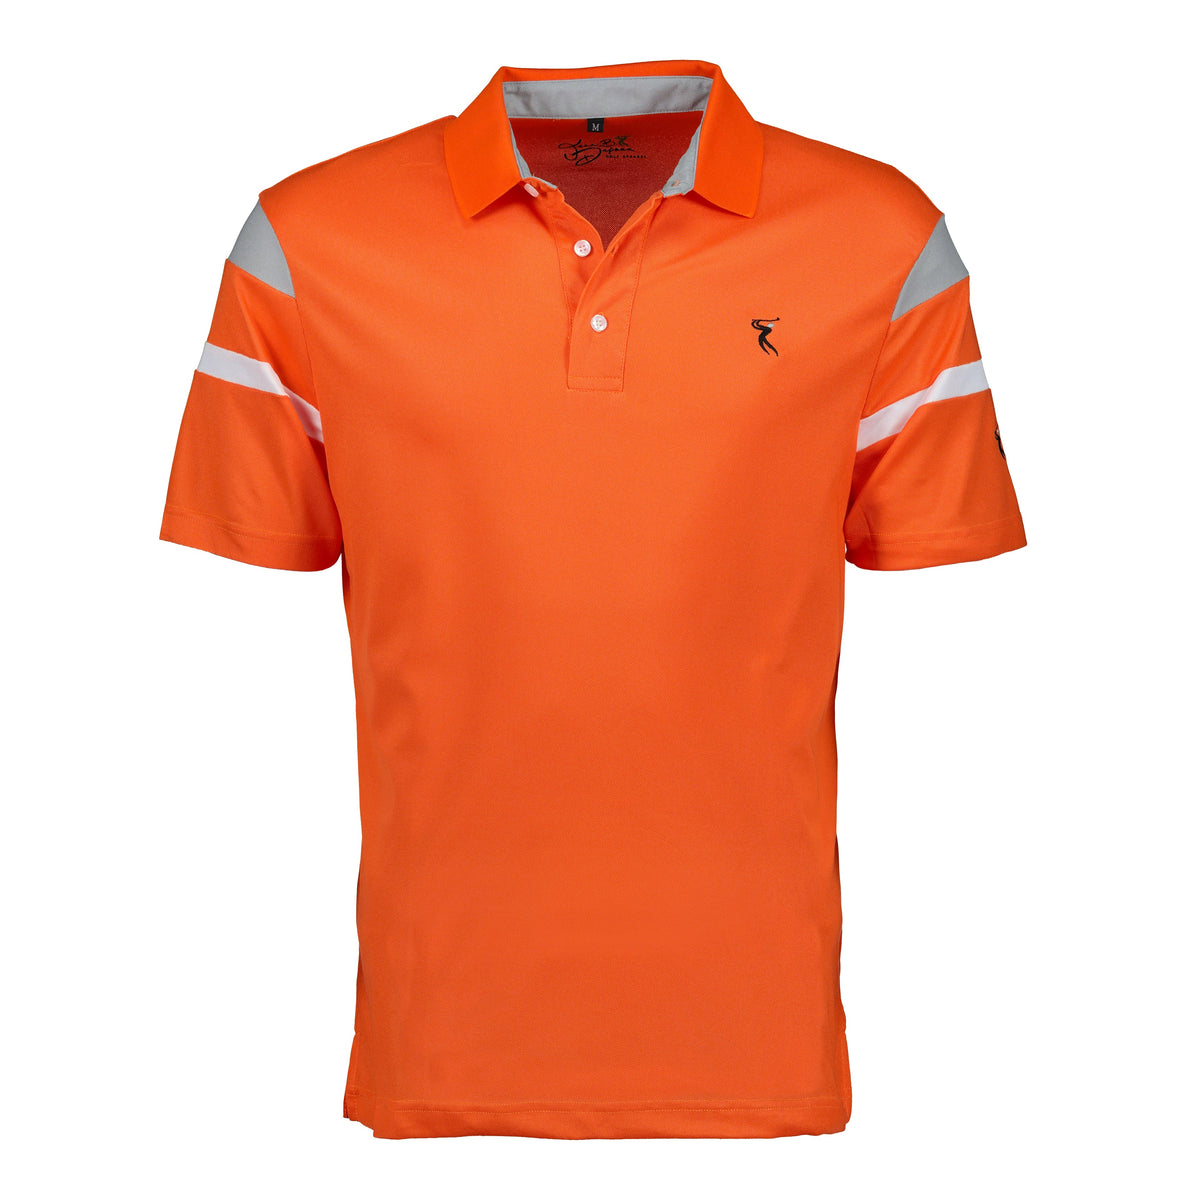 DriFIT Golf Shirts Men’s Short Sleeve Stripe My Golf Shirts